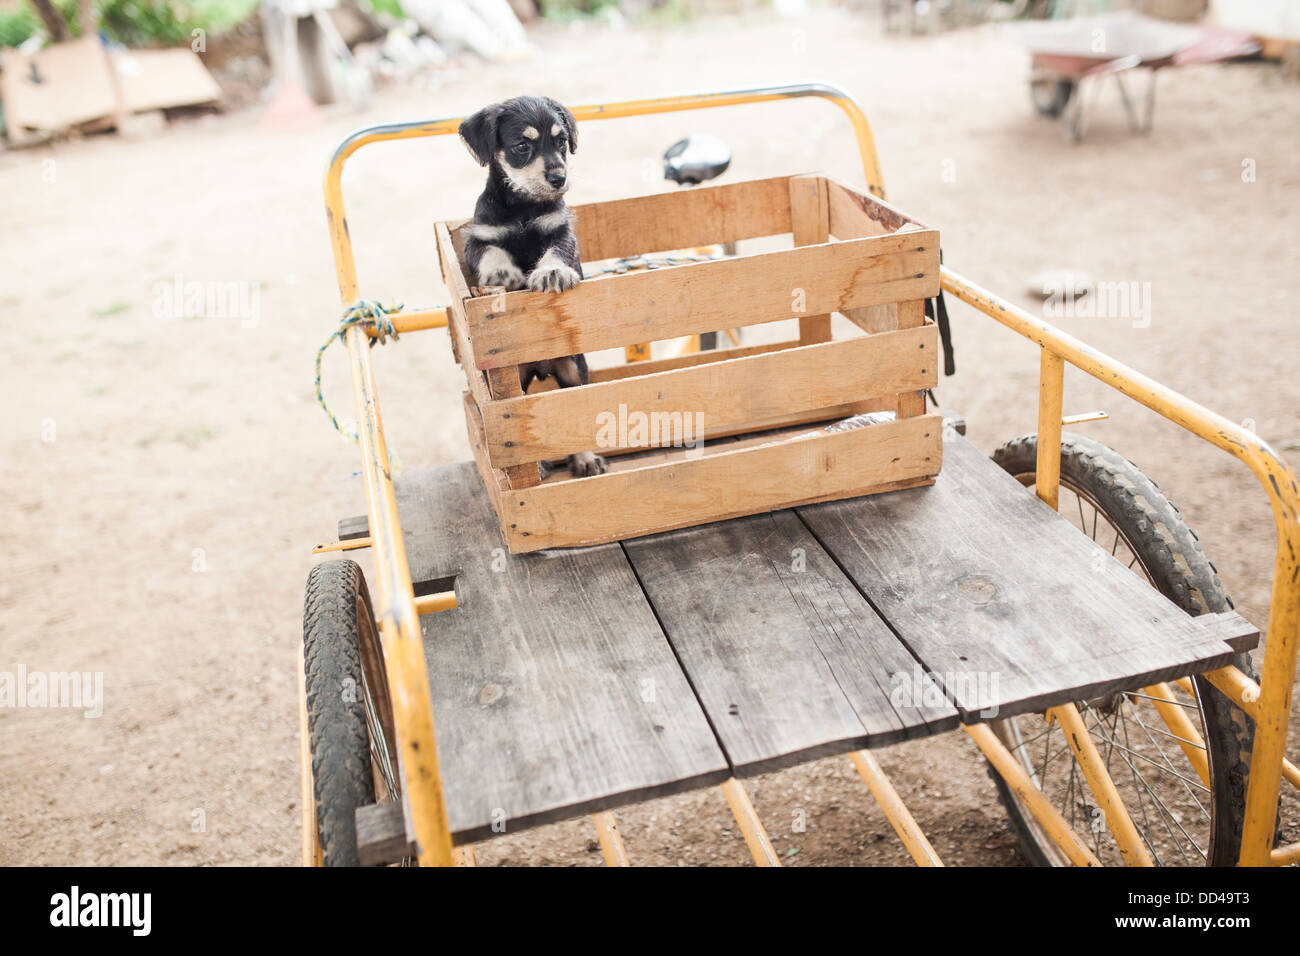 Un adorabile cucciolo si siede in una gabbia in legno sulla parte superiore di un triciclo. Foto Stock